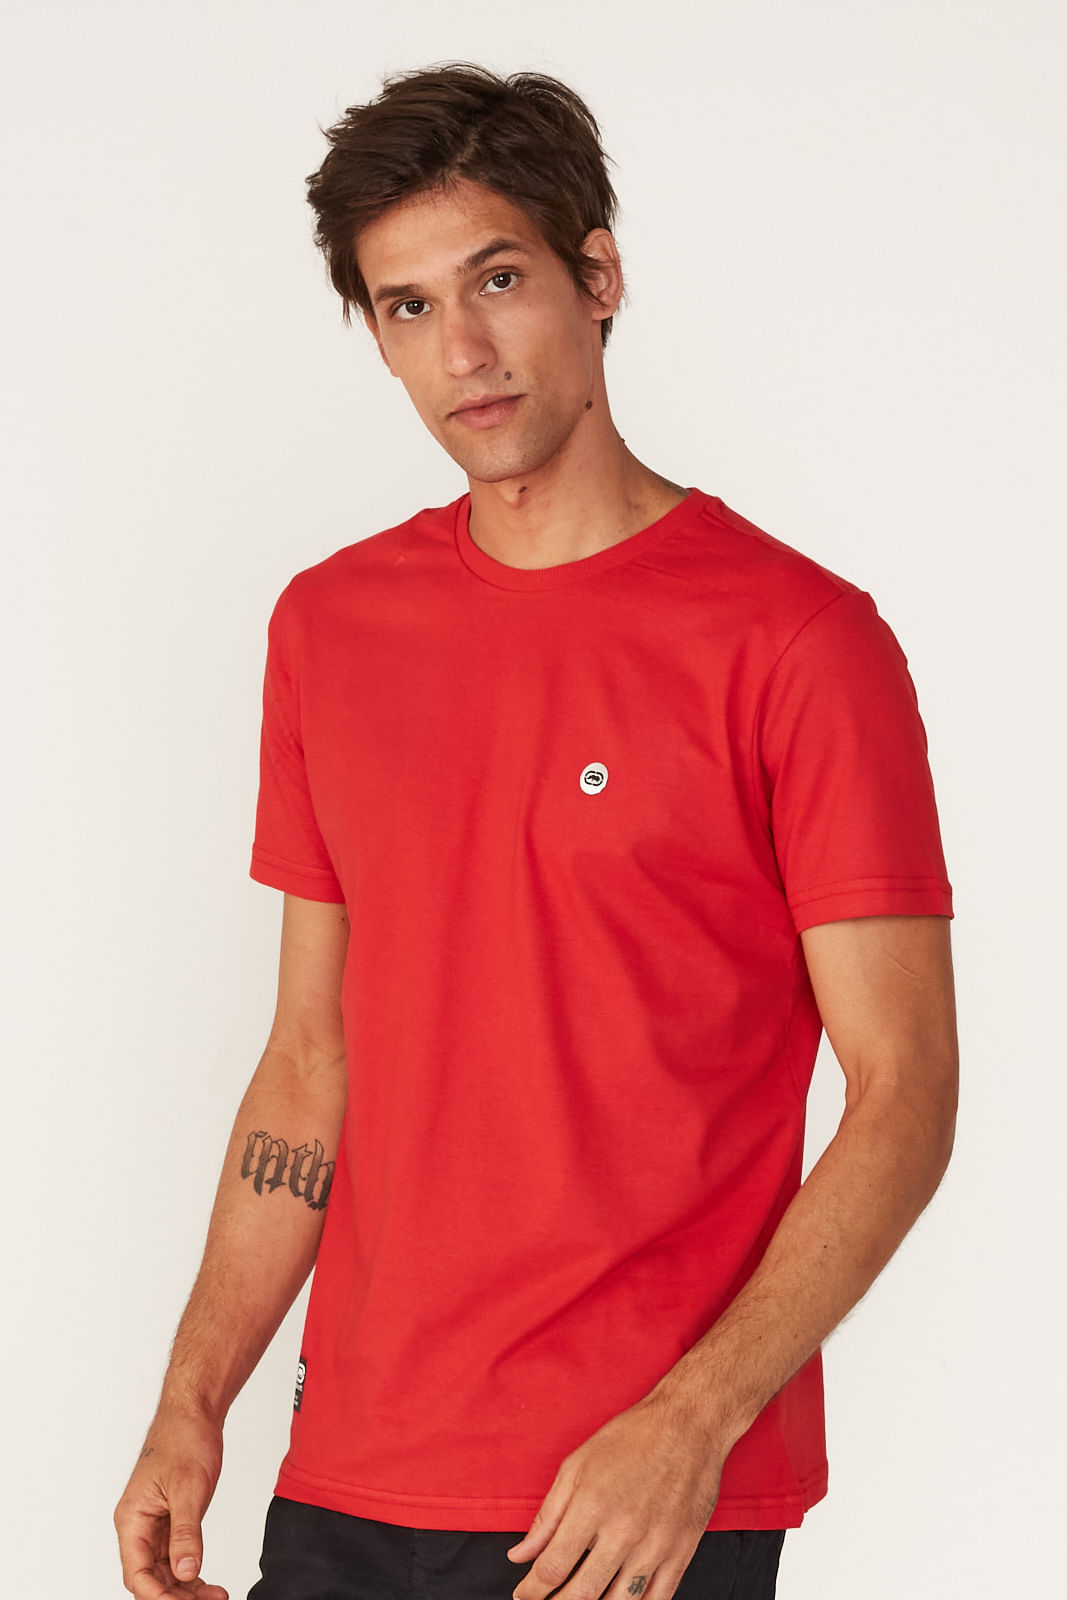 Camiseta Ecko Fashion Basic Vermelha